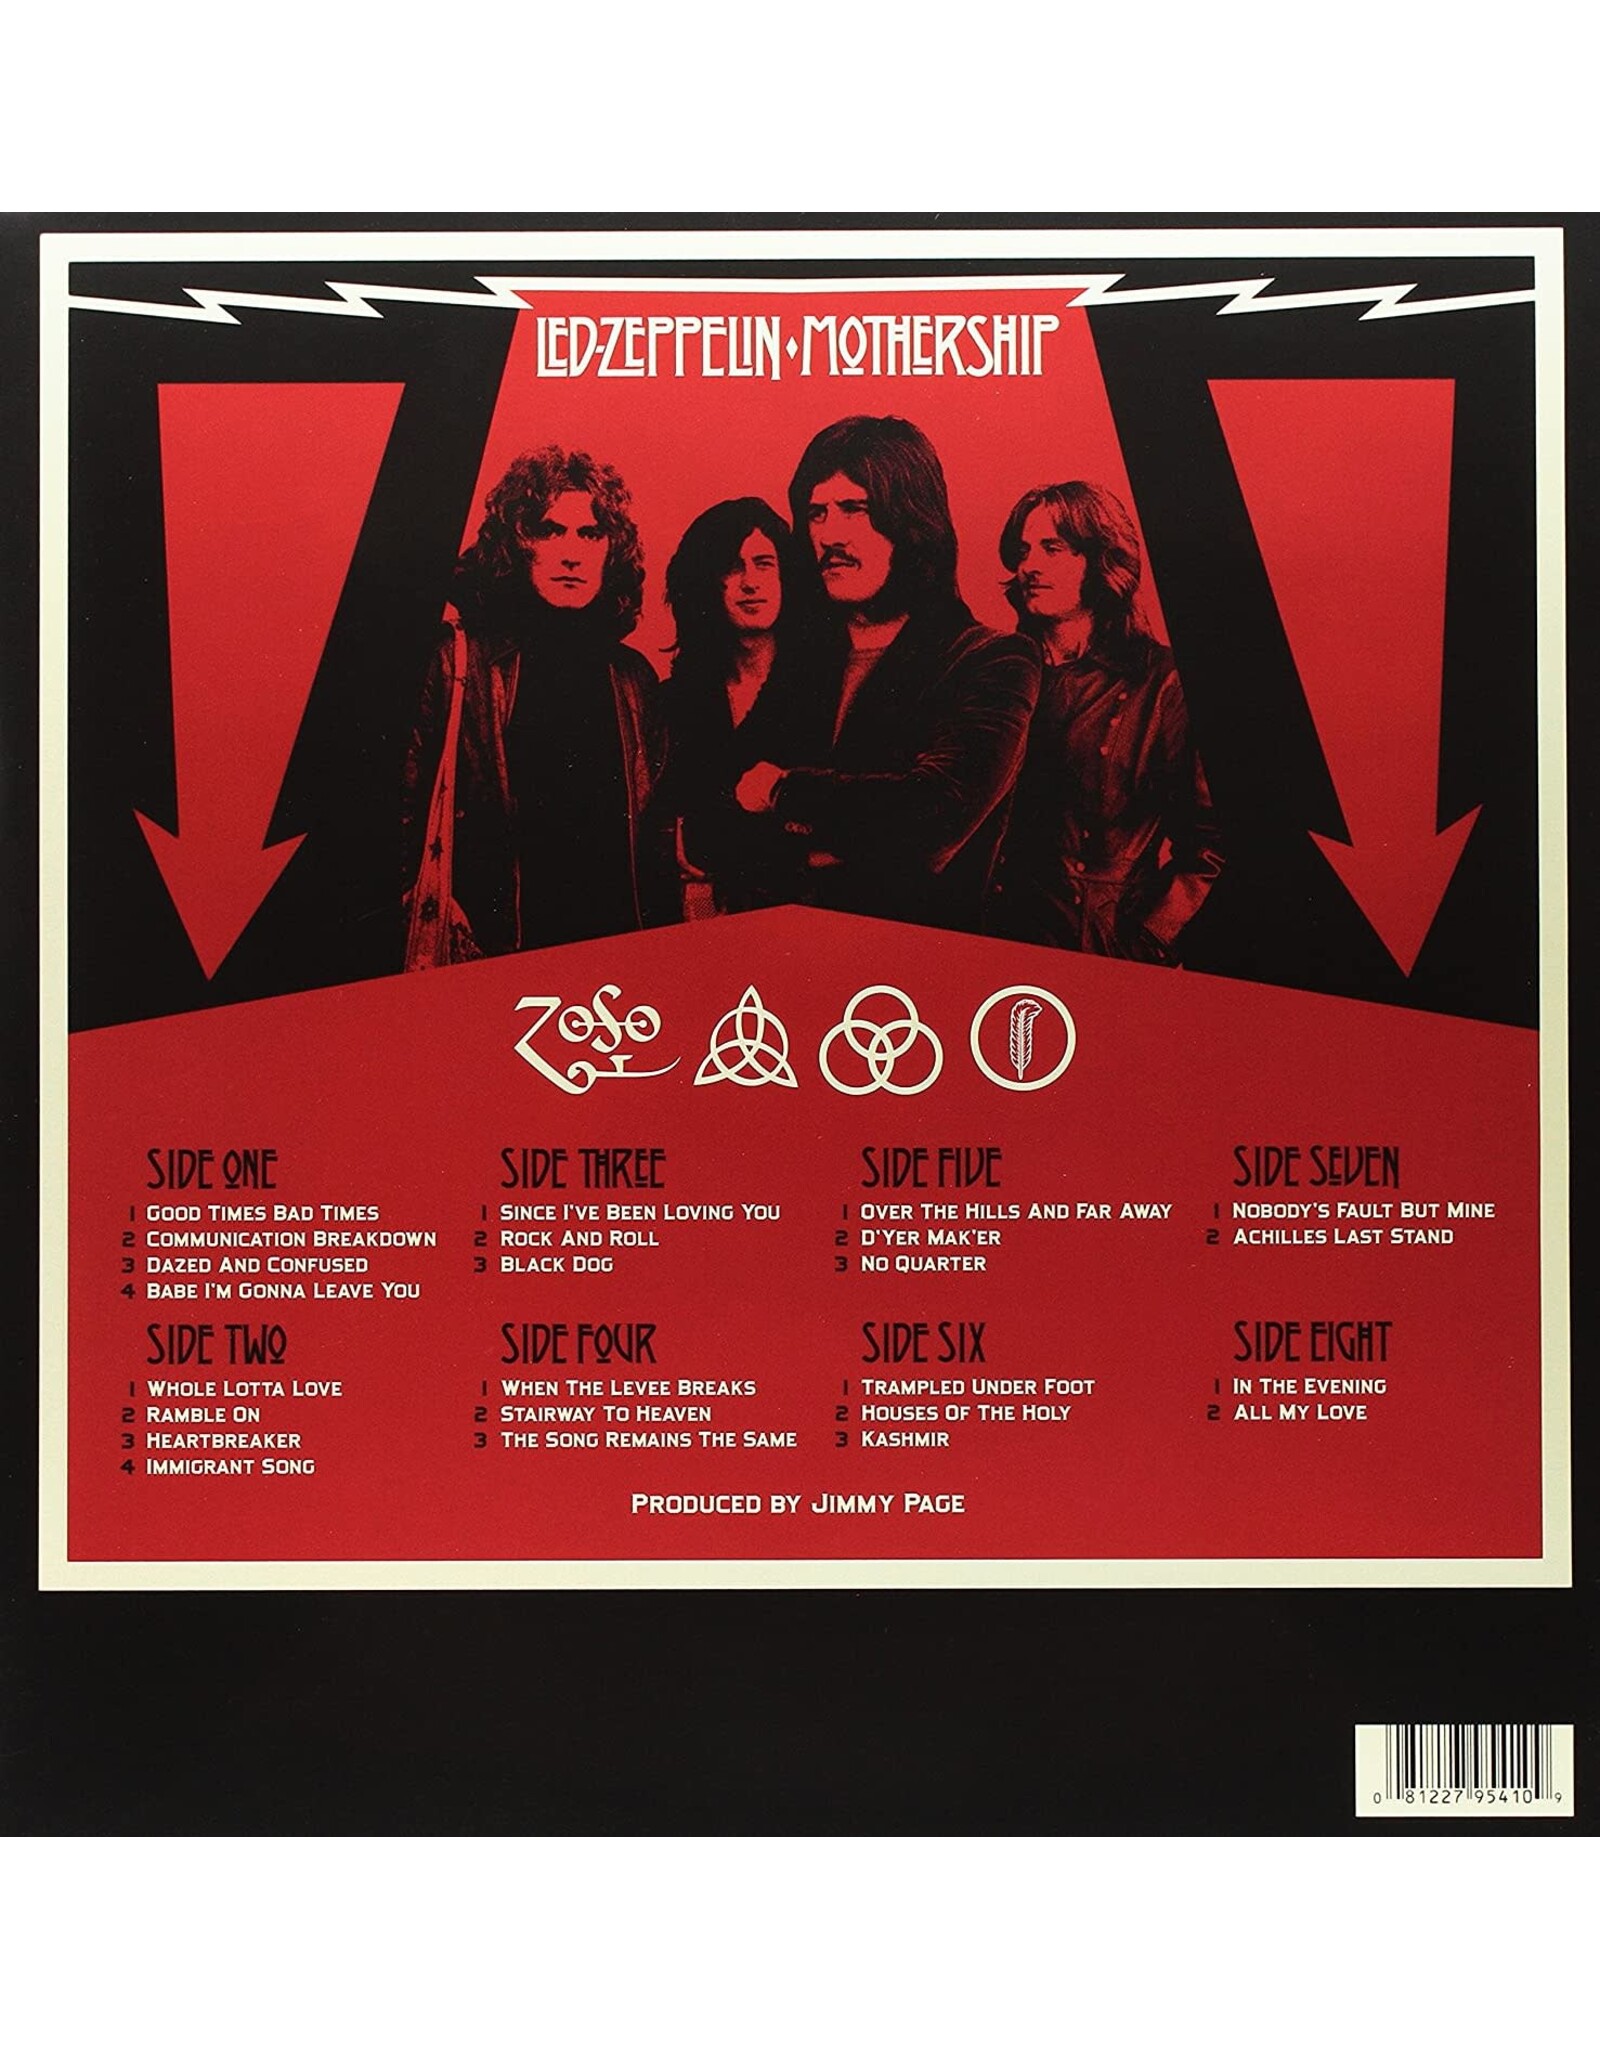 Led Zeppelin -Mothership (The Best Of Led Zeppelin) [2015 Remaster]